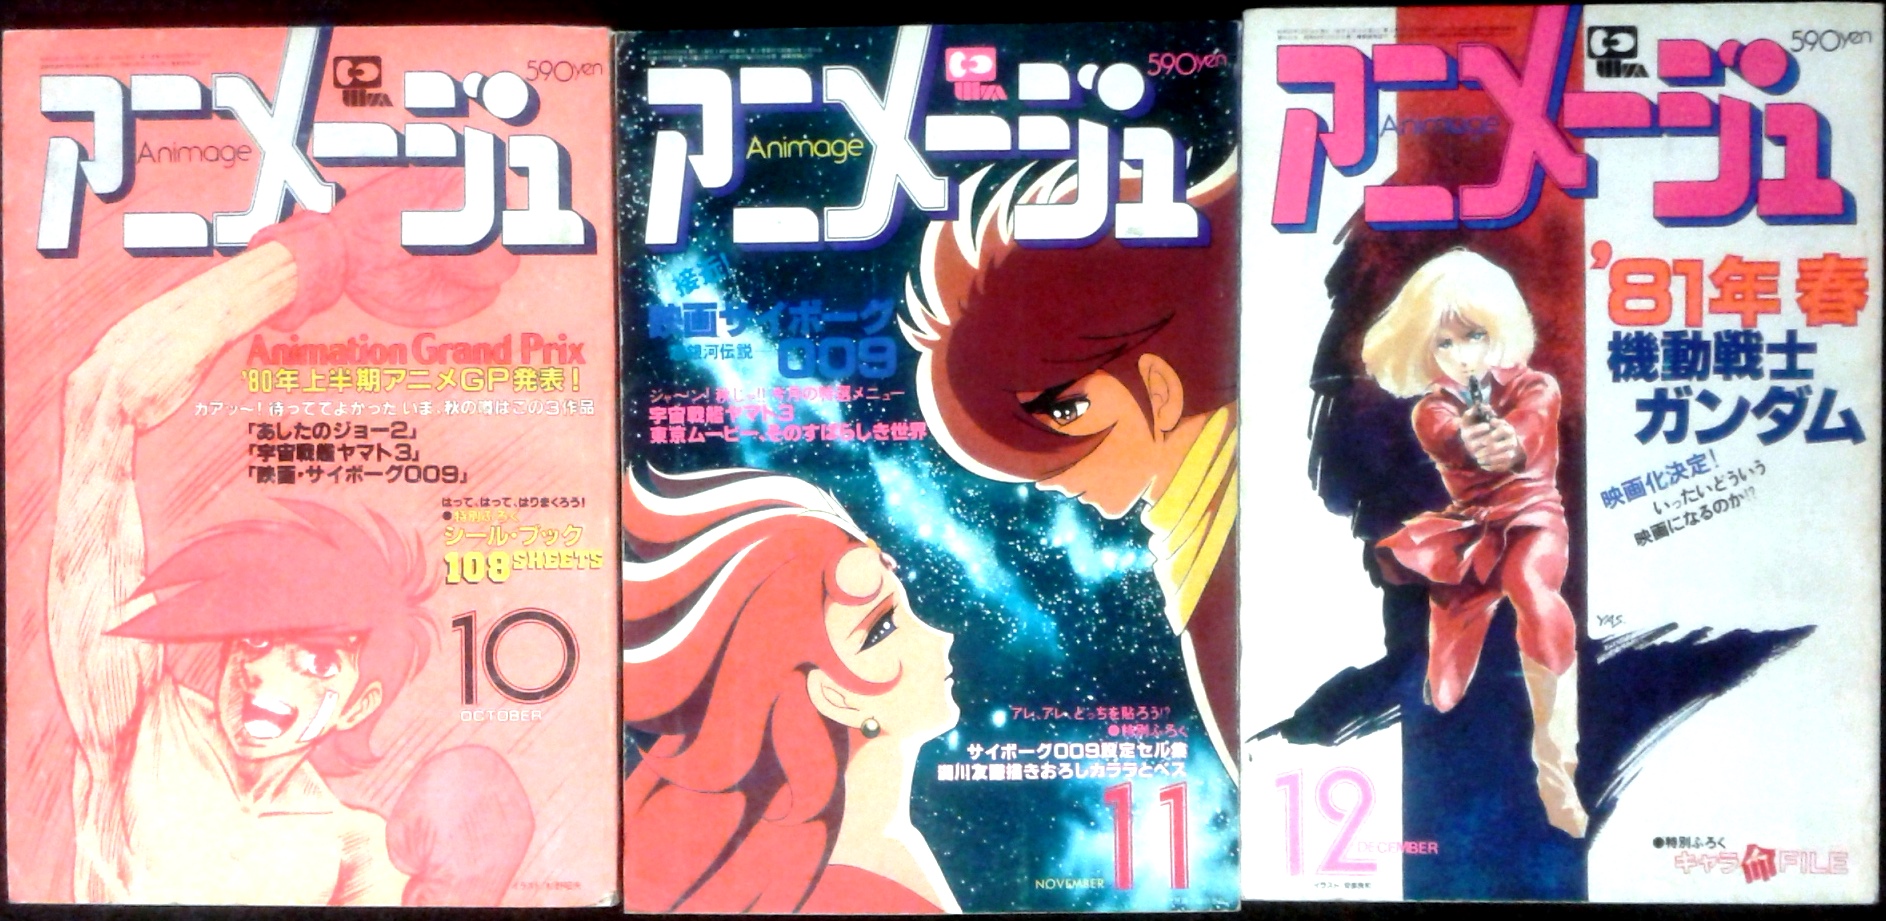 Animage, a Japanese anime and manga magazine, published by Tokuma Shoten since 1978.